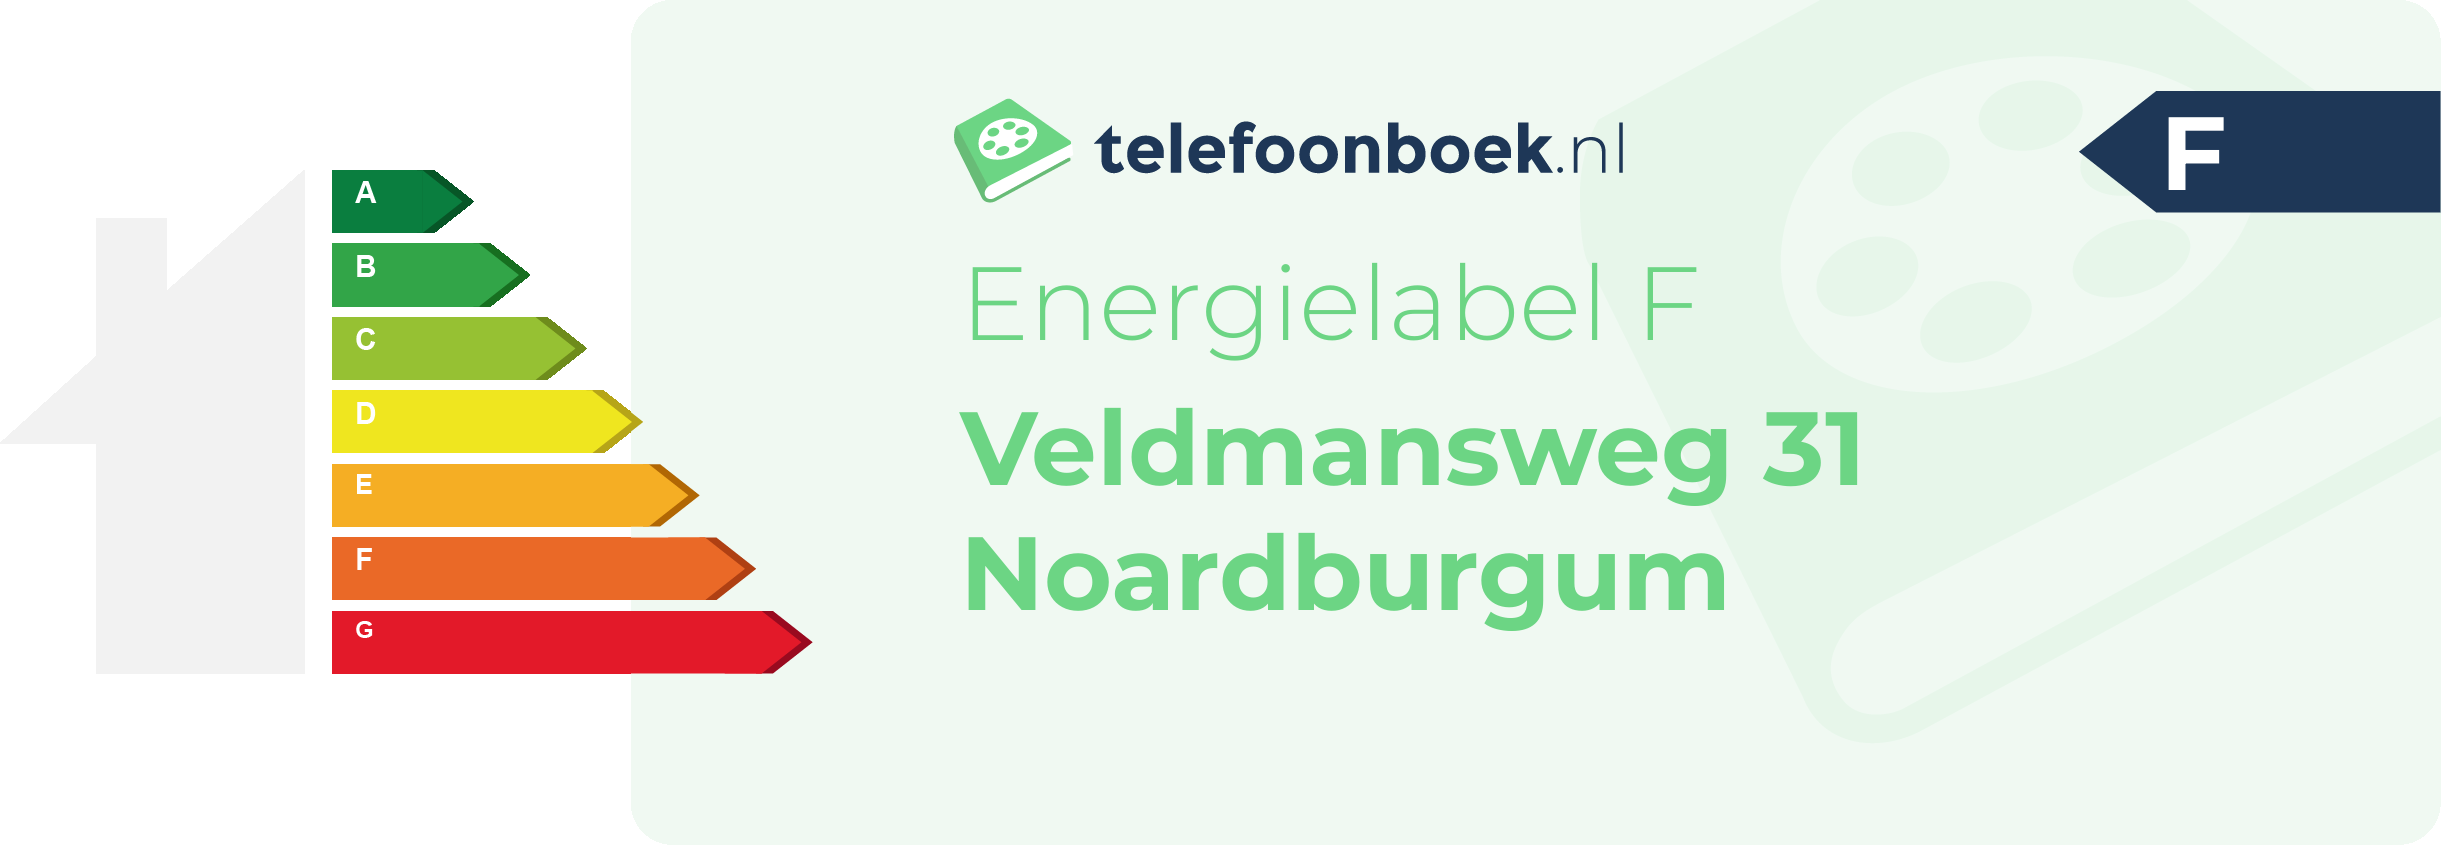 Energielabel Veldmansweg 31 Noardburgum